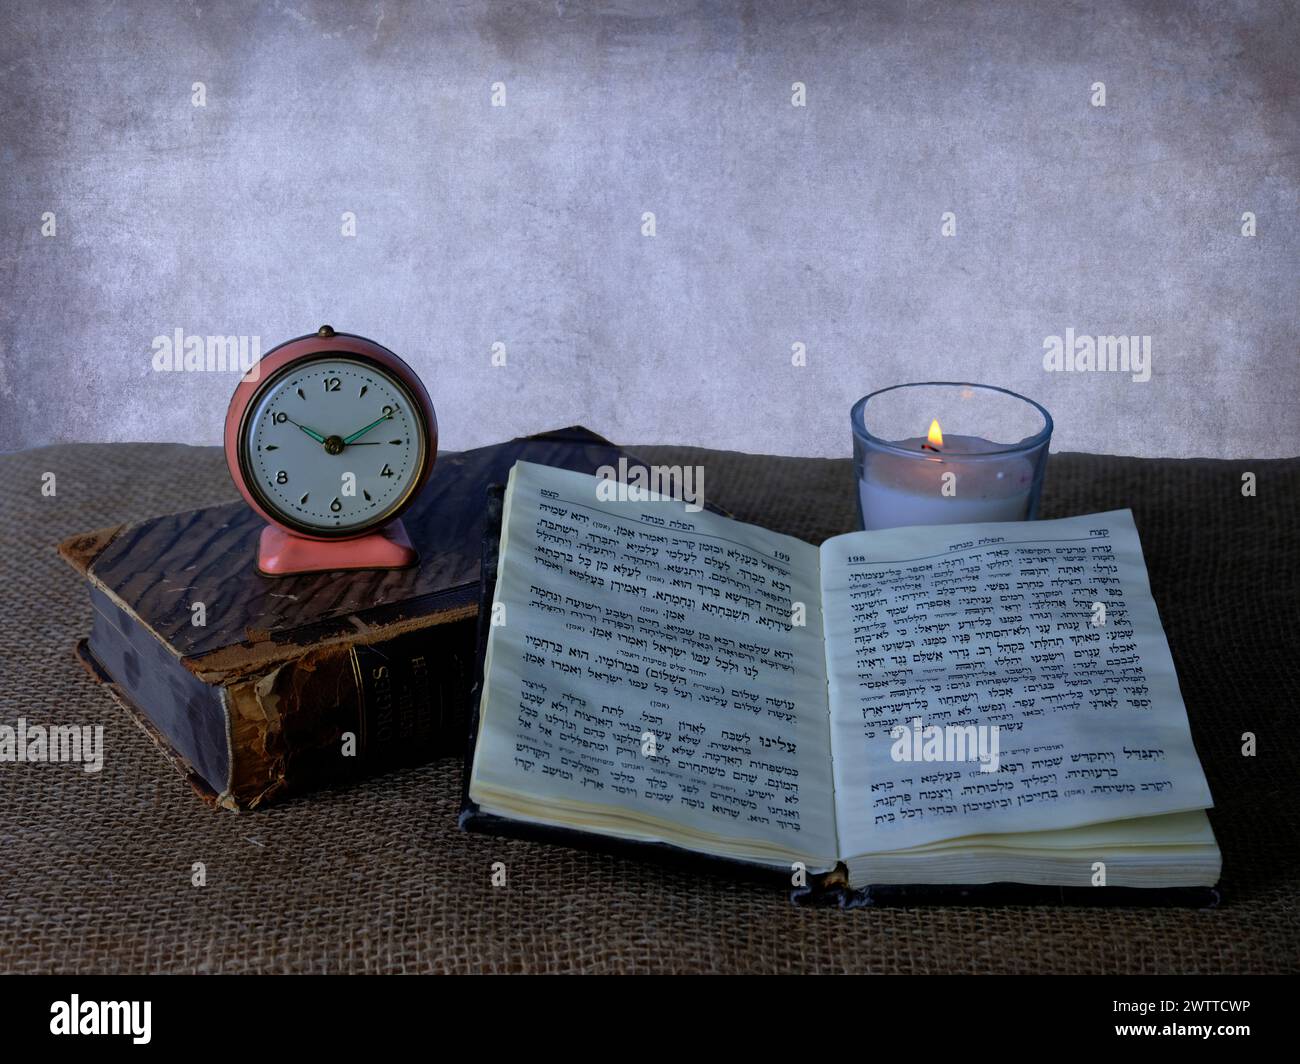 Zeitlose Ruhe mit einer Vintage-Uhr, flackernder Kerze und einem offenen Buch Stockfoto